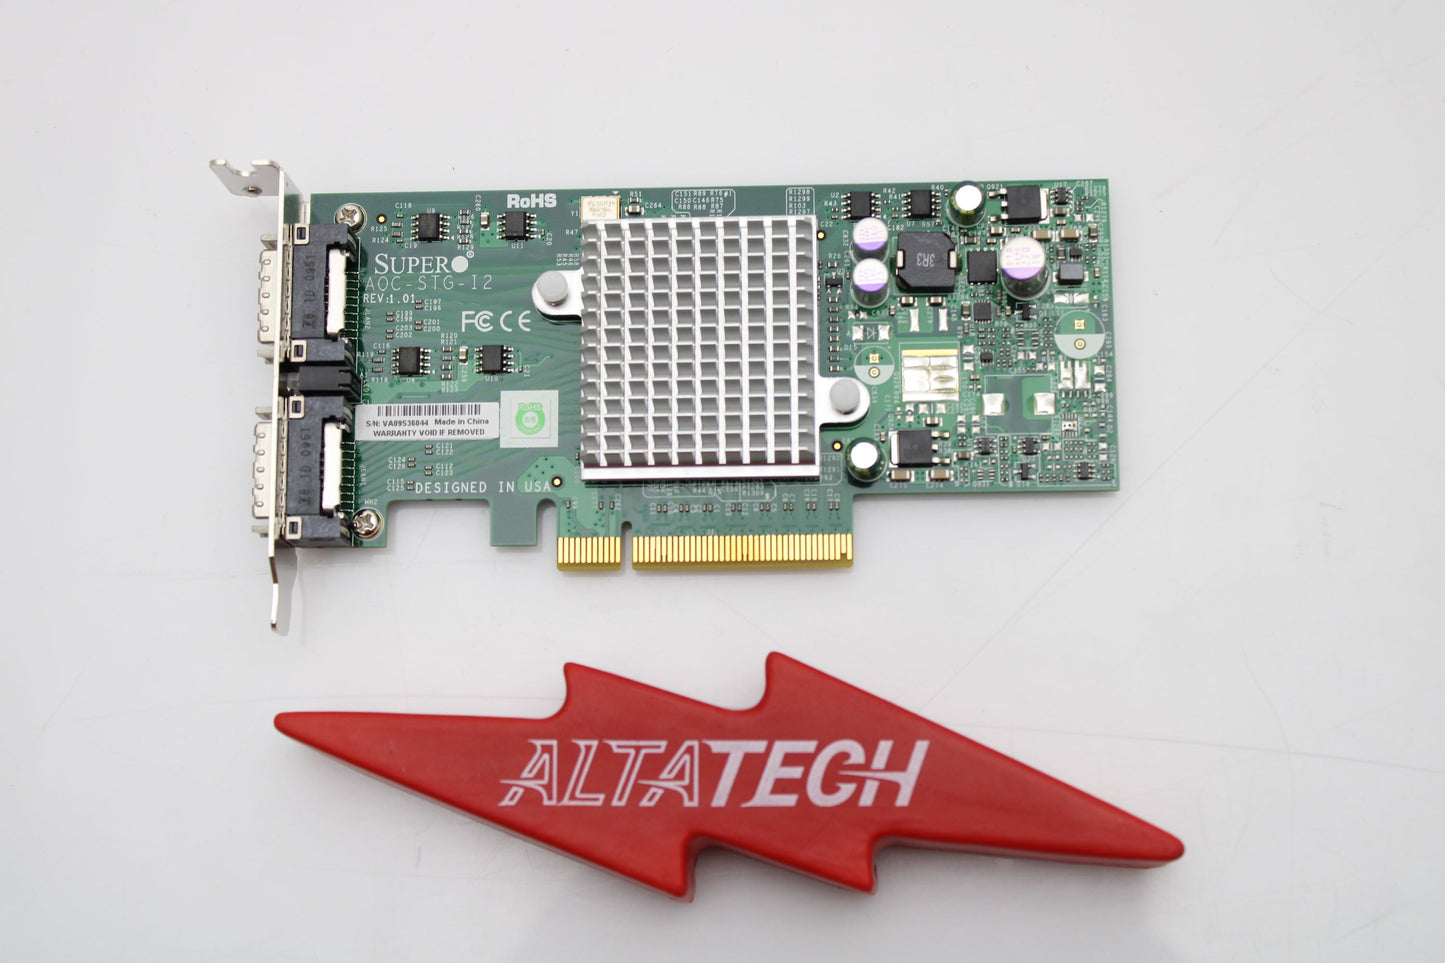 SuperMicro AOC-STG-I2 Dual Port 10GBE DP PCI-E NIC CX4, Used